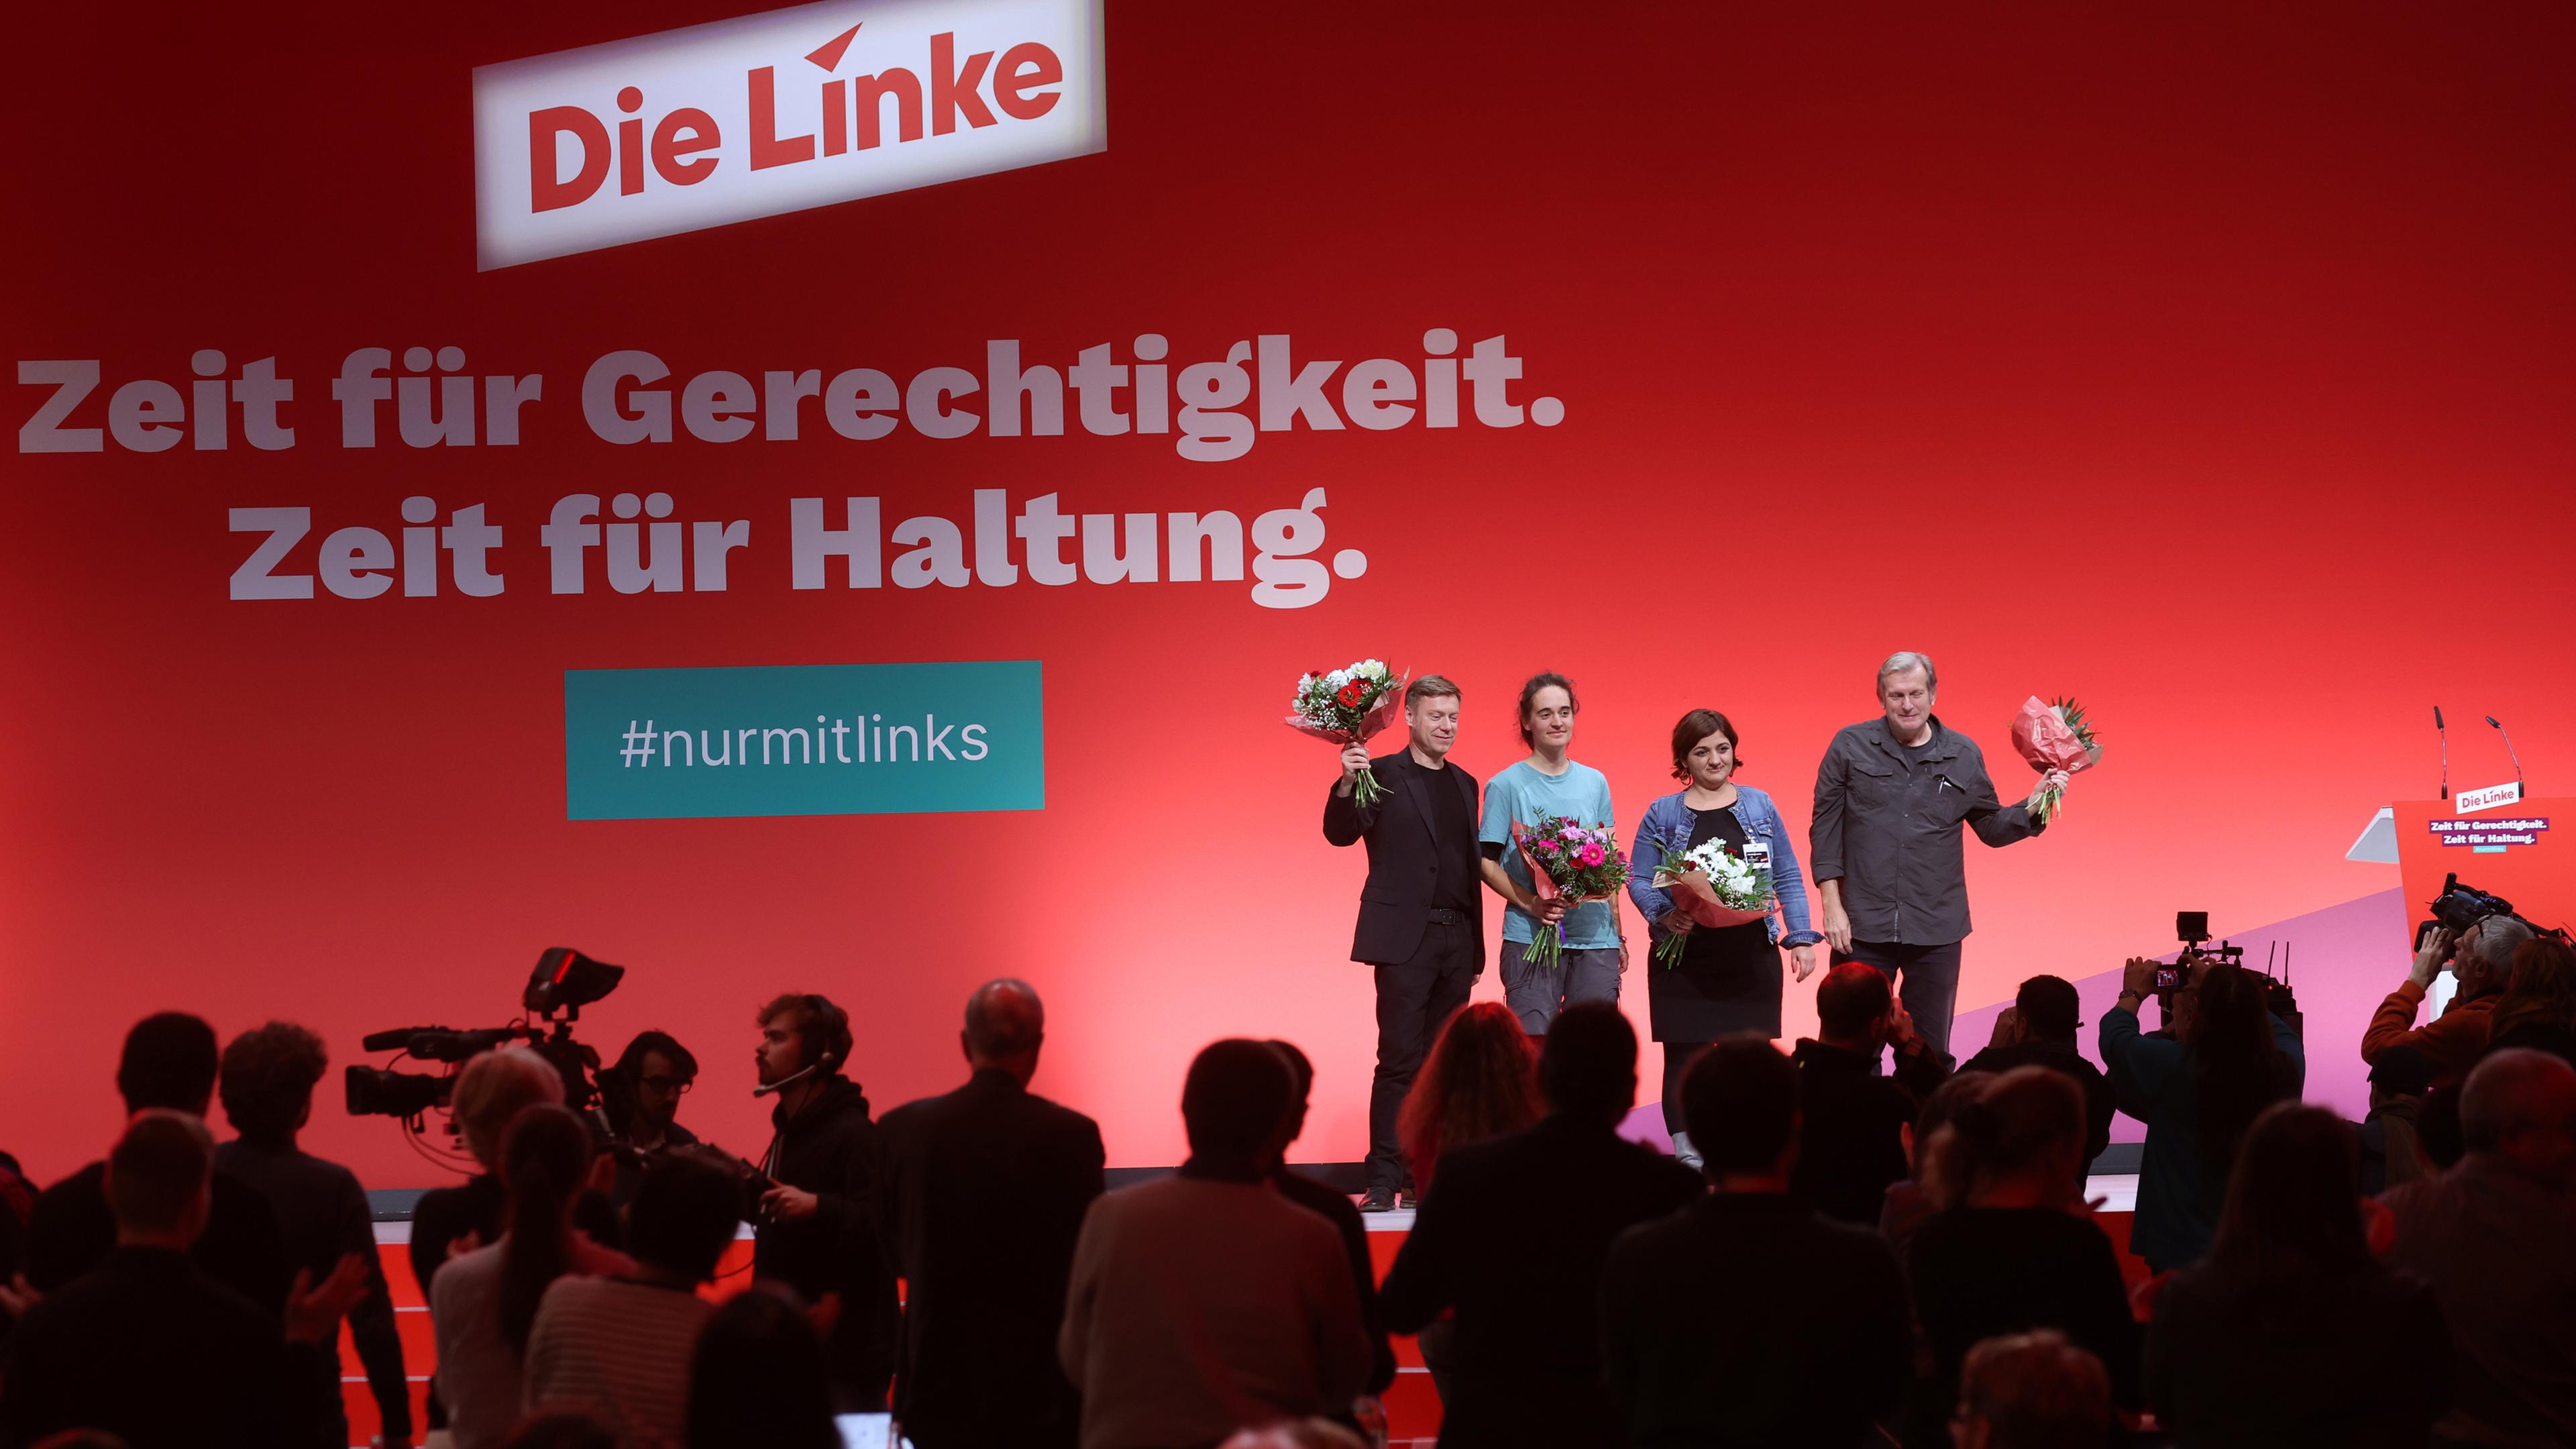 Bayern, Augsburg: Martin Schirdewan (l-r), Carola Rackete, Özlem Alev Demirel und Gerhard Trabert stehen als Kandidaten für das Europaparlament, für die Partei die Linke, auf der Bühne.